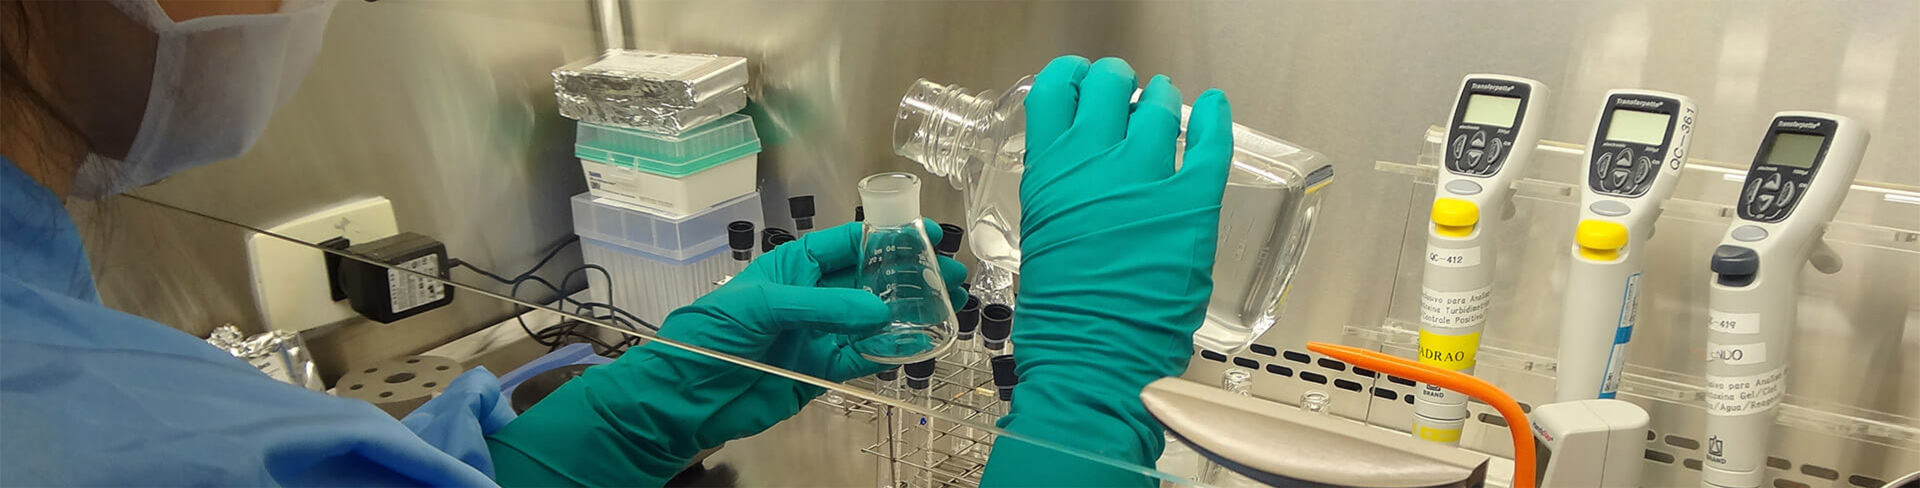 Imagem em close nas mãos de um cientista com luvas verde-água tranferindo líquidos entre recipientes